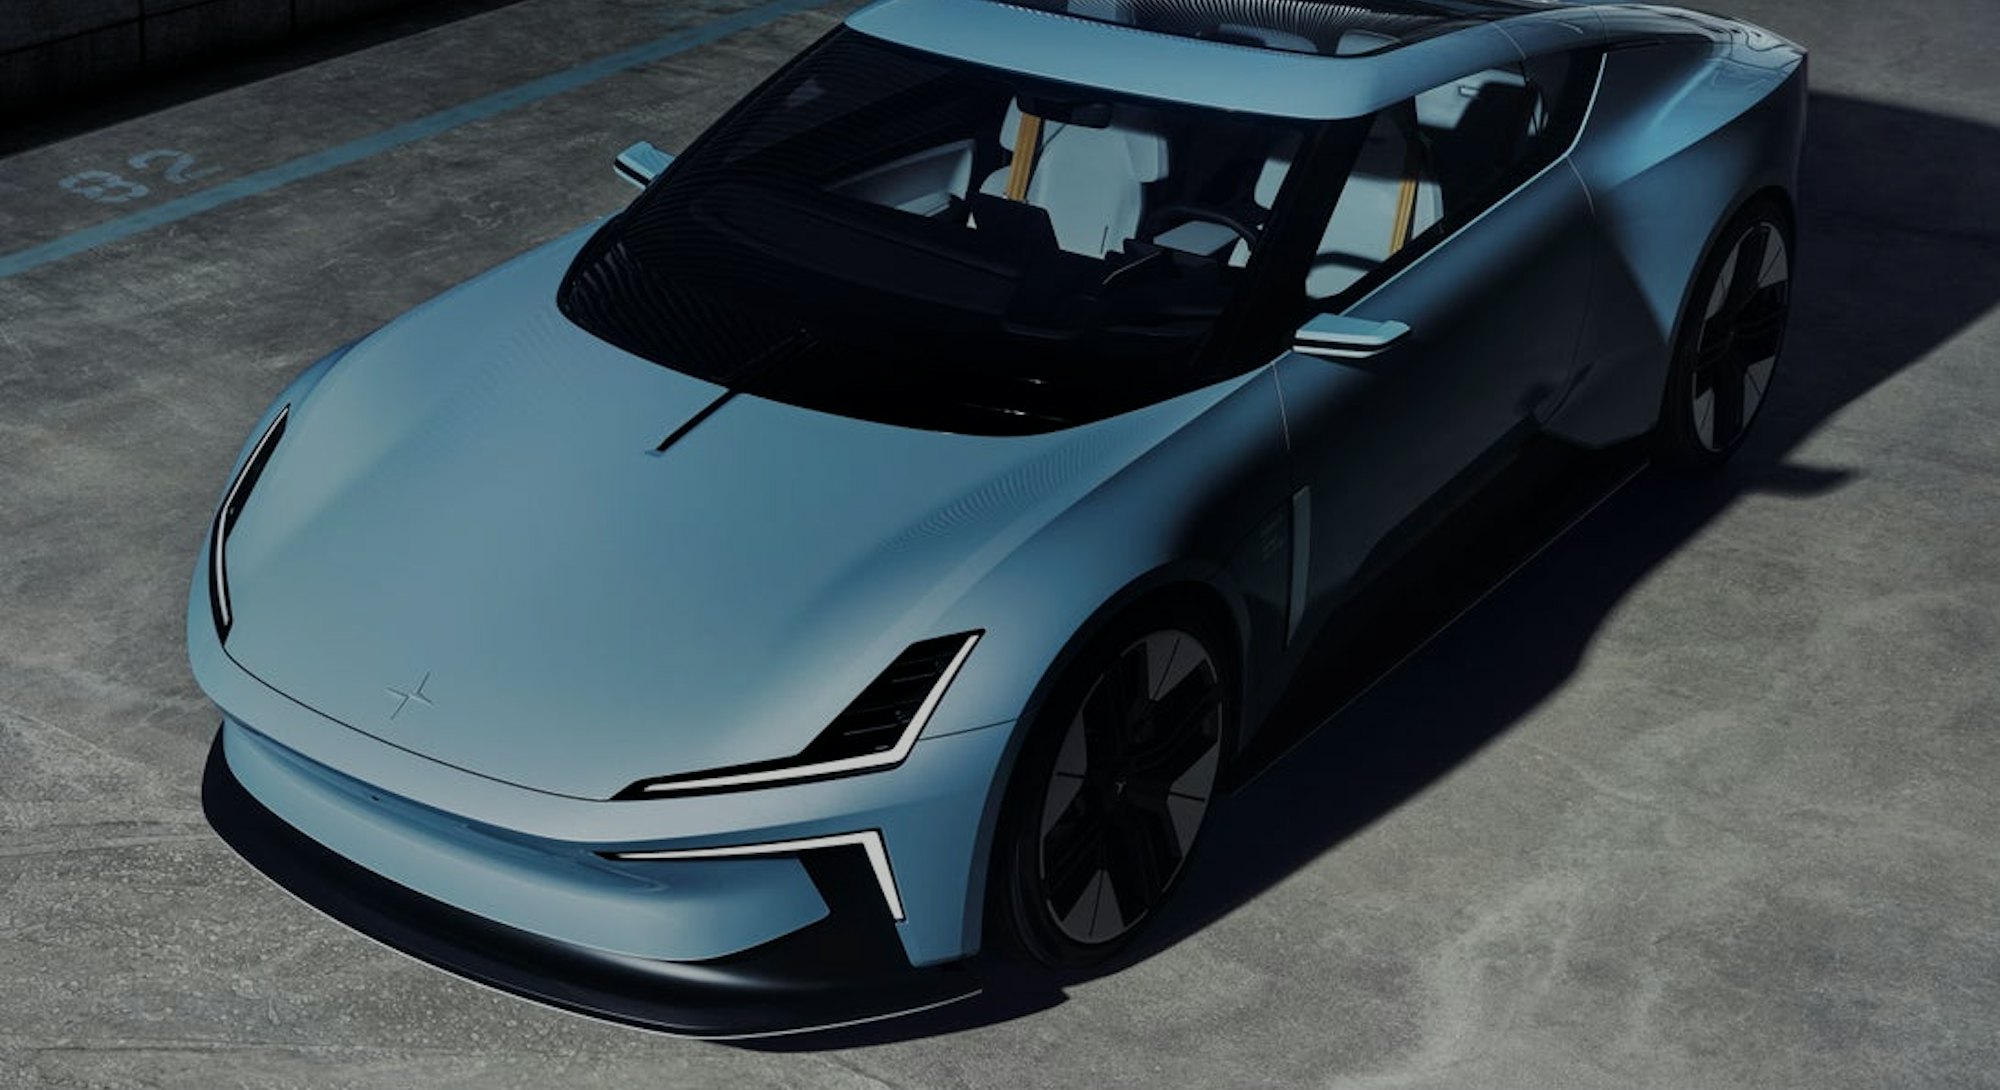 Polestar's newest concept car — the O2